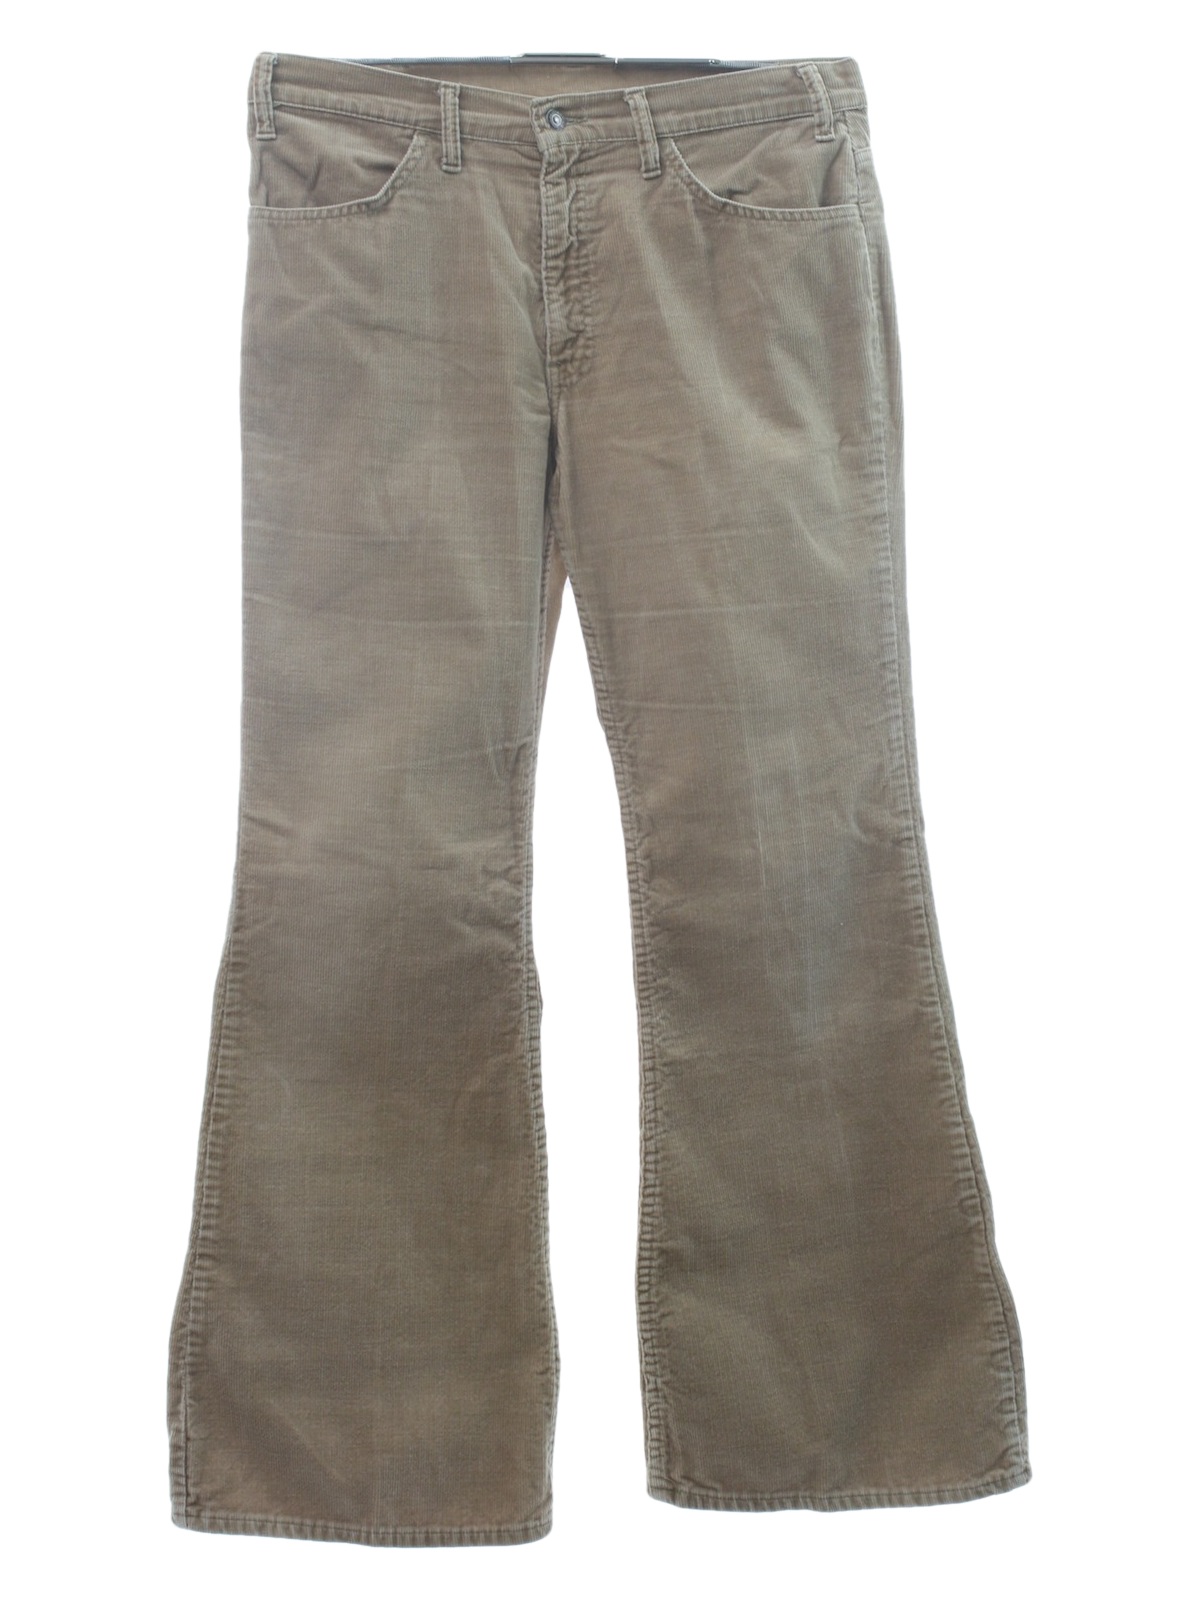 1970's Bellbottom Pants (Levis): 70s -Levis- Mens warm tan cotton ...